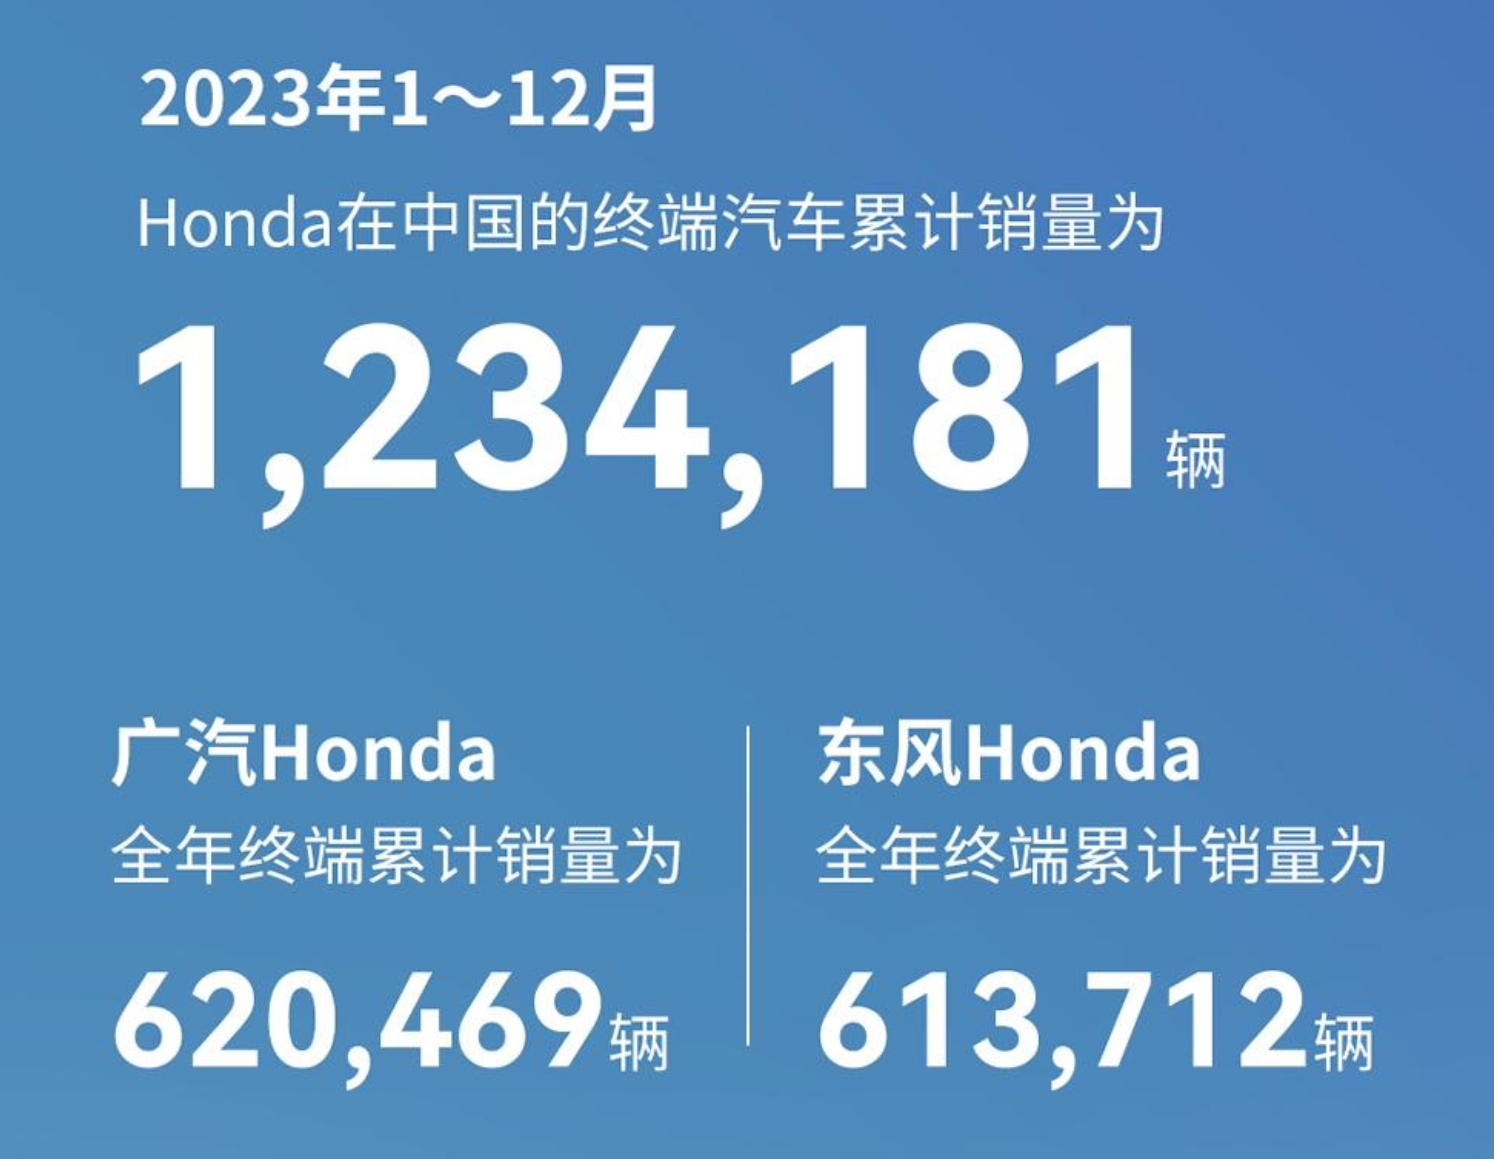 本田中国2023年全年累计销量1234181辆，广汽本田销量略高于东风本田